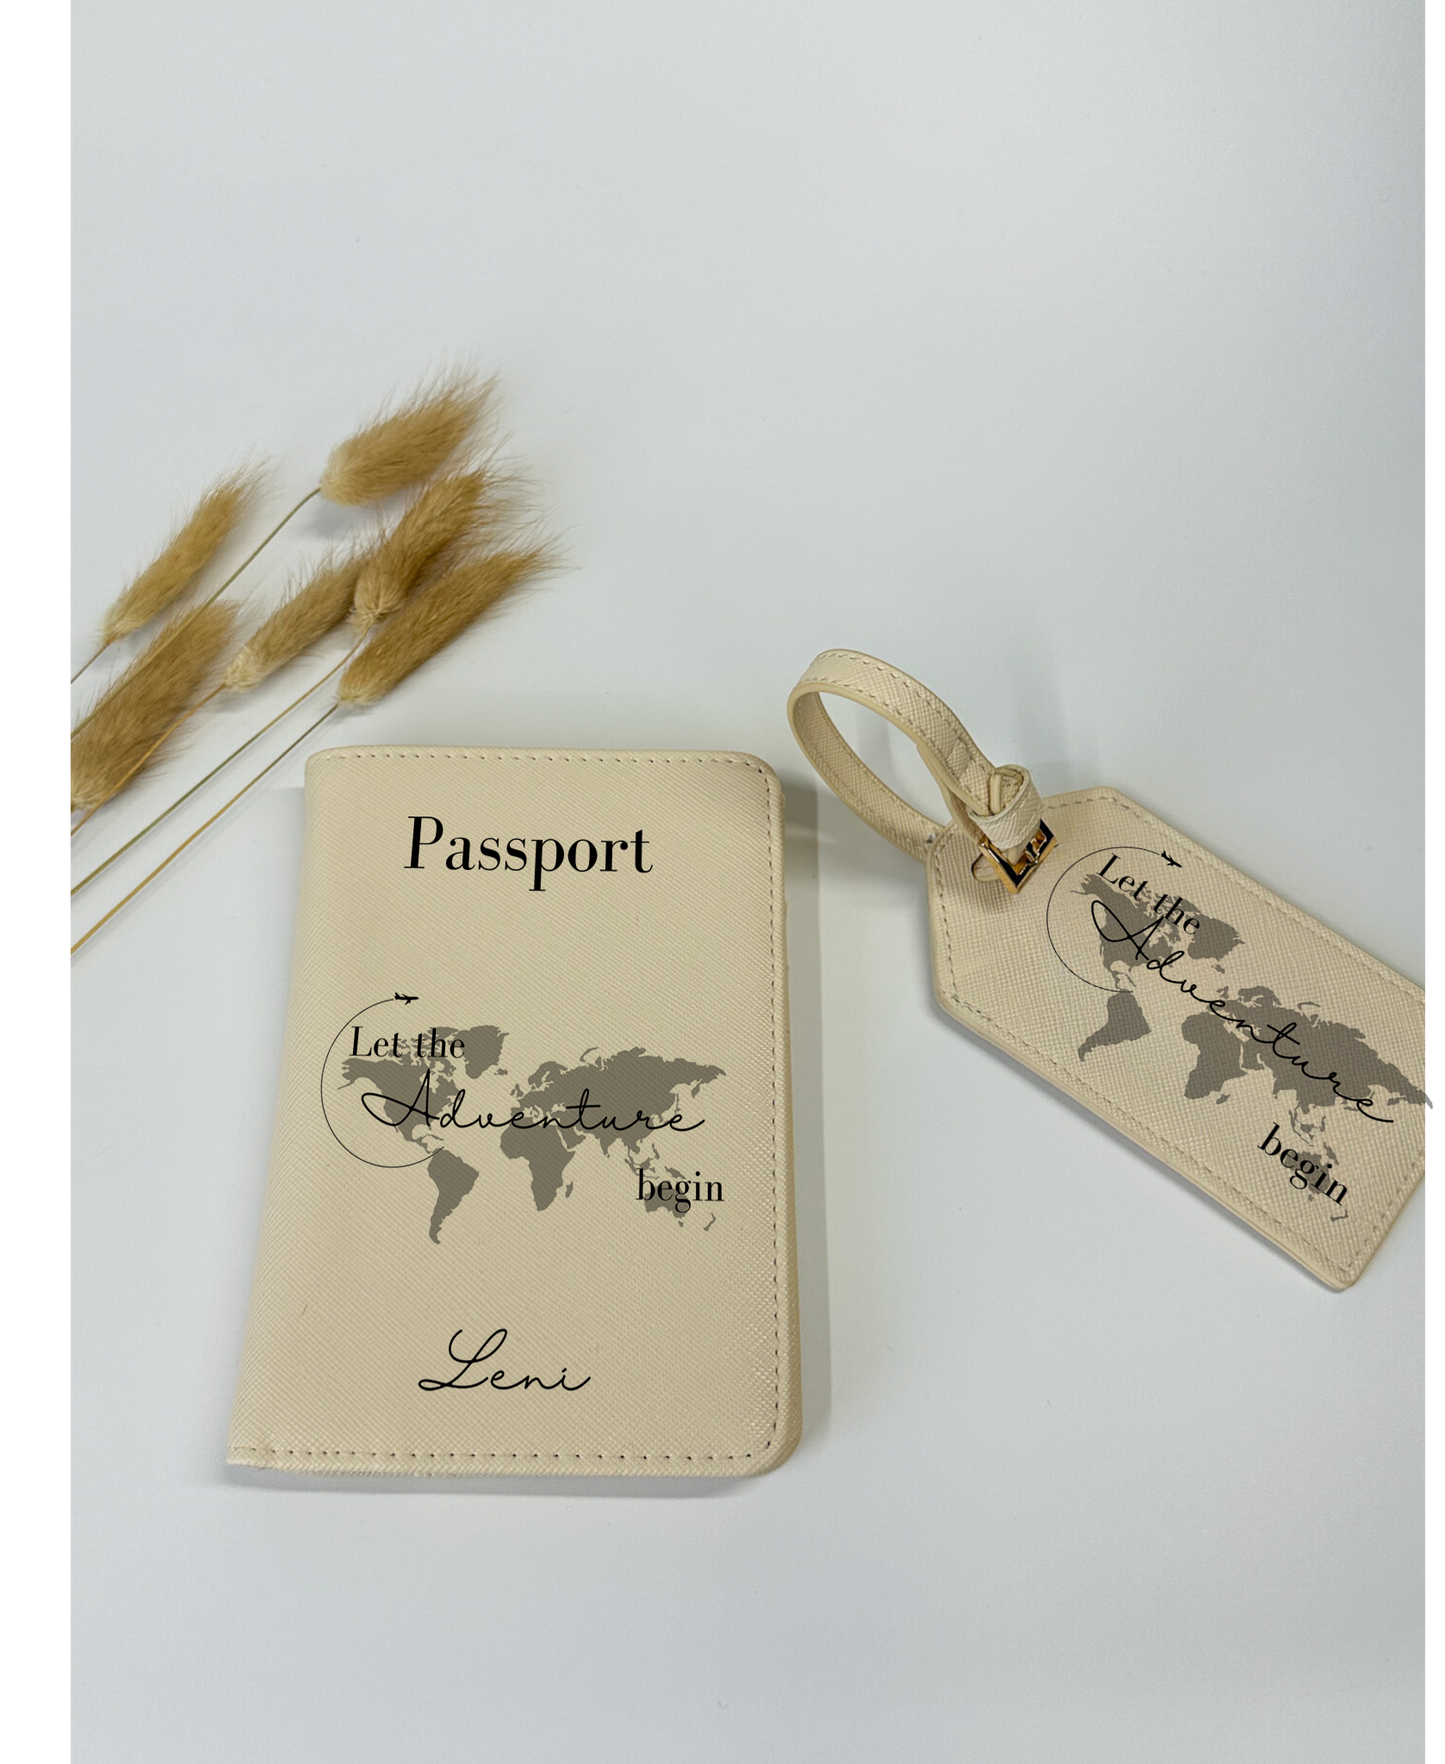 Reisepasshülle/Passhülle mit Namen/Reisepasshülle personalisiert/Passhülle für die Tasche/Passhülle personalisiert/Kofferanhänger